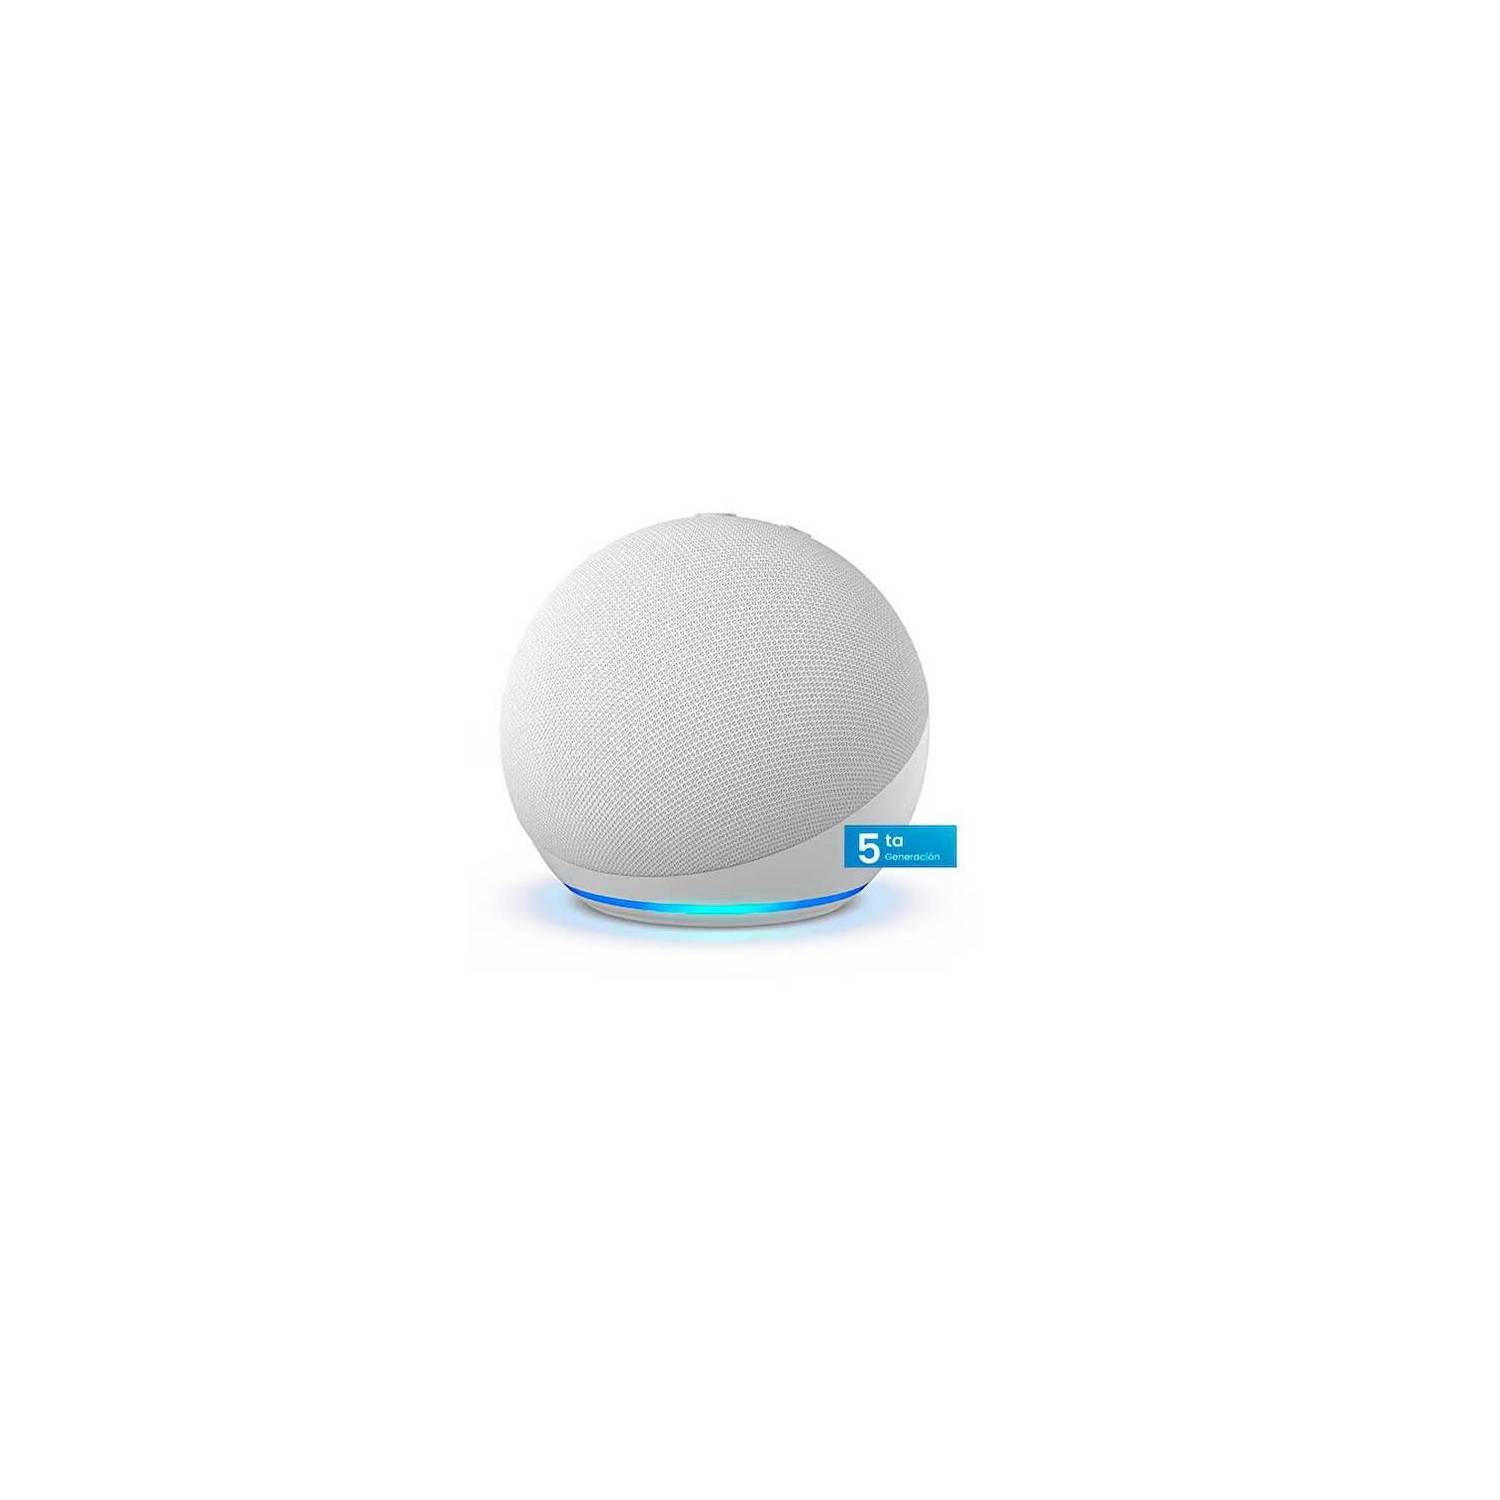 Parlante  Alexa Echo Dot 5ta Generación Smart Hub Blanco